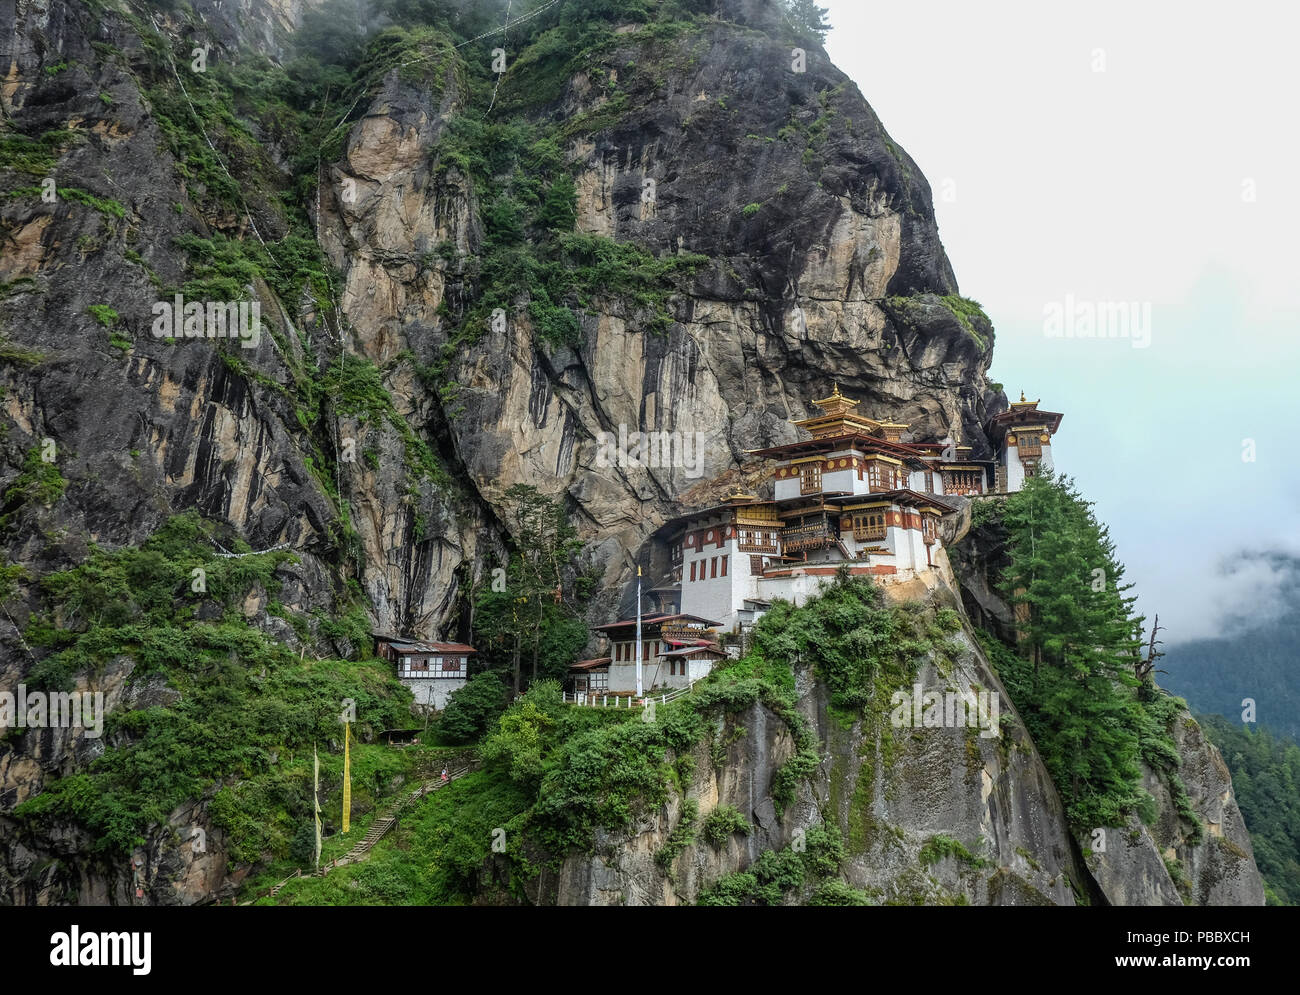 View of Taktsang Palphug Monastery (Tiger Nest) on misty mountain in Paro, Bhutan. Stock Photo